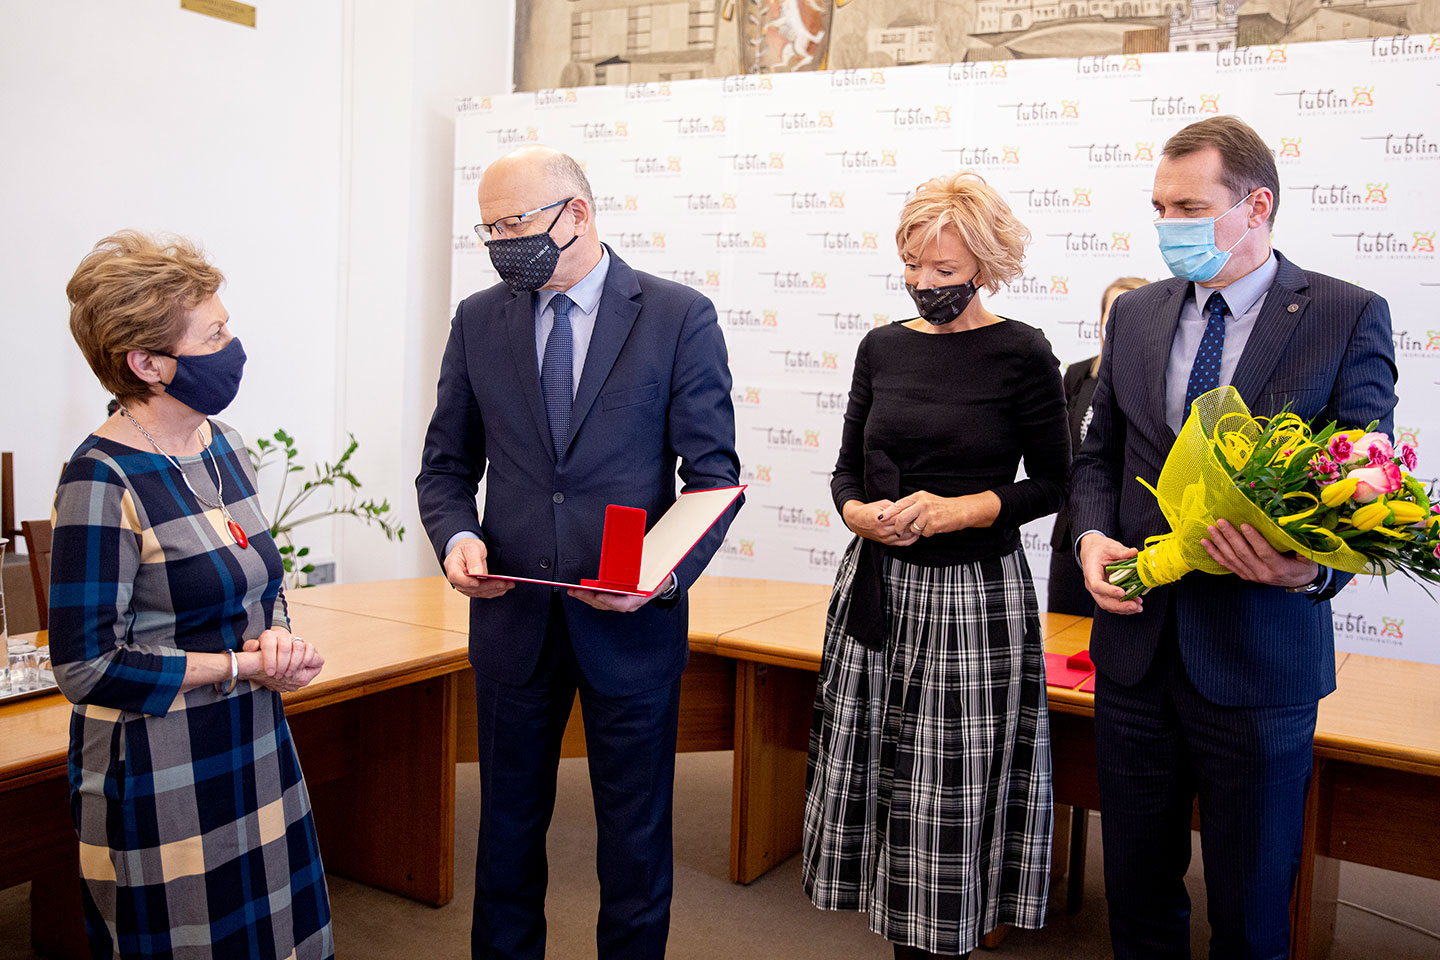 Wręczenie medalu profesor Ginalskiej przez prezydenta miasta Lublin w 2021